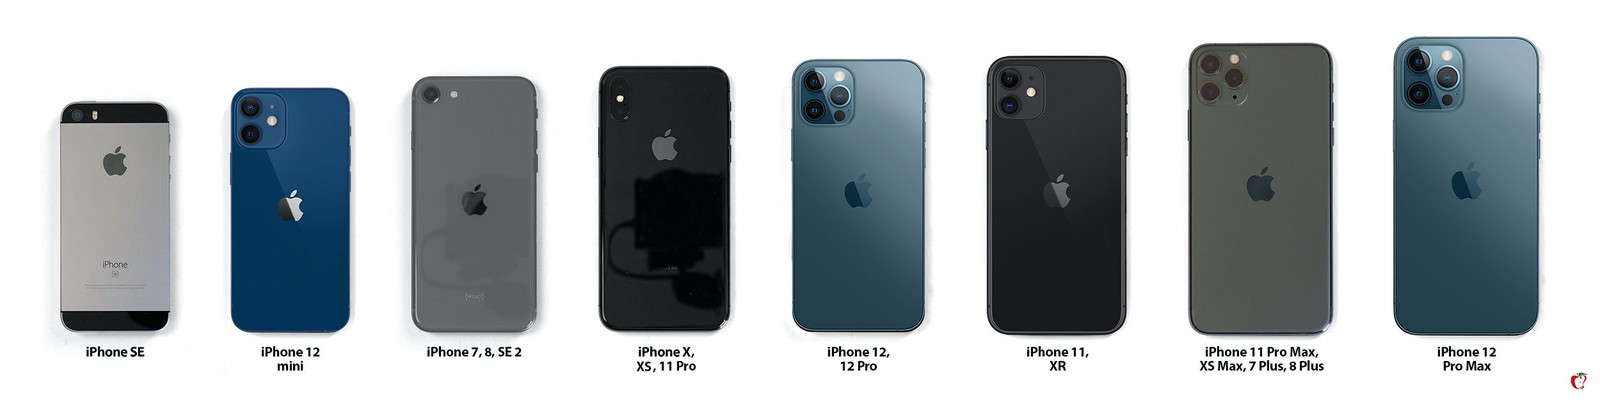 iPhone 12 velikost: Jak velké jsou nové iPhony ve srovnání s předešlými